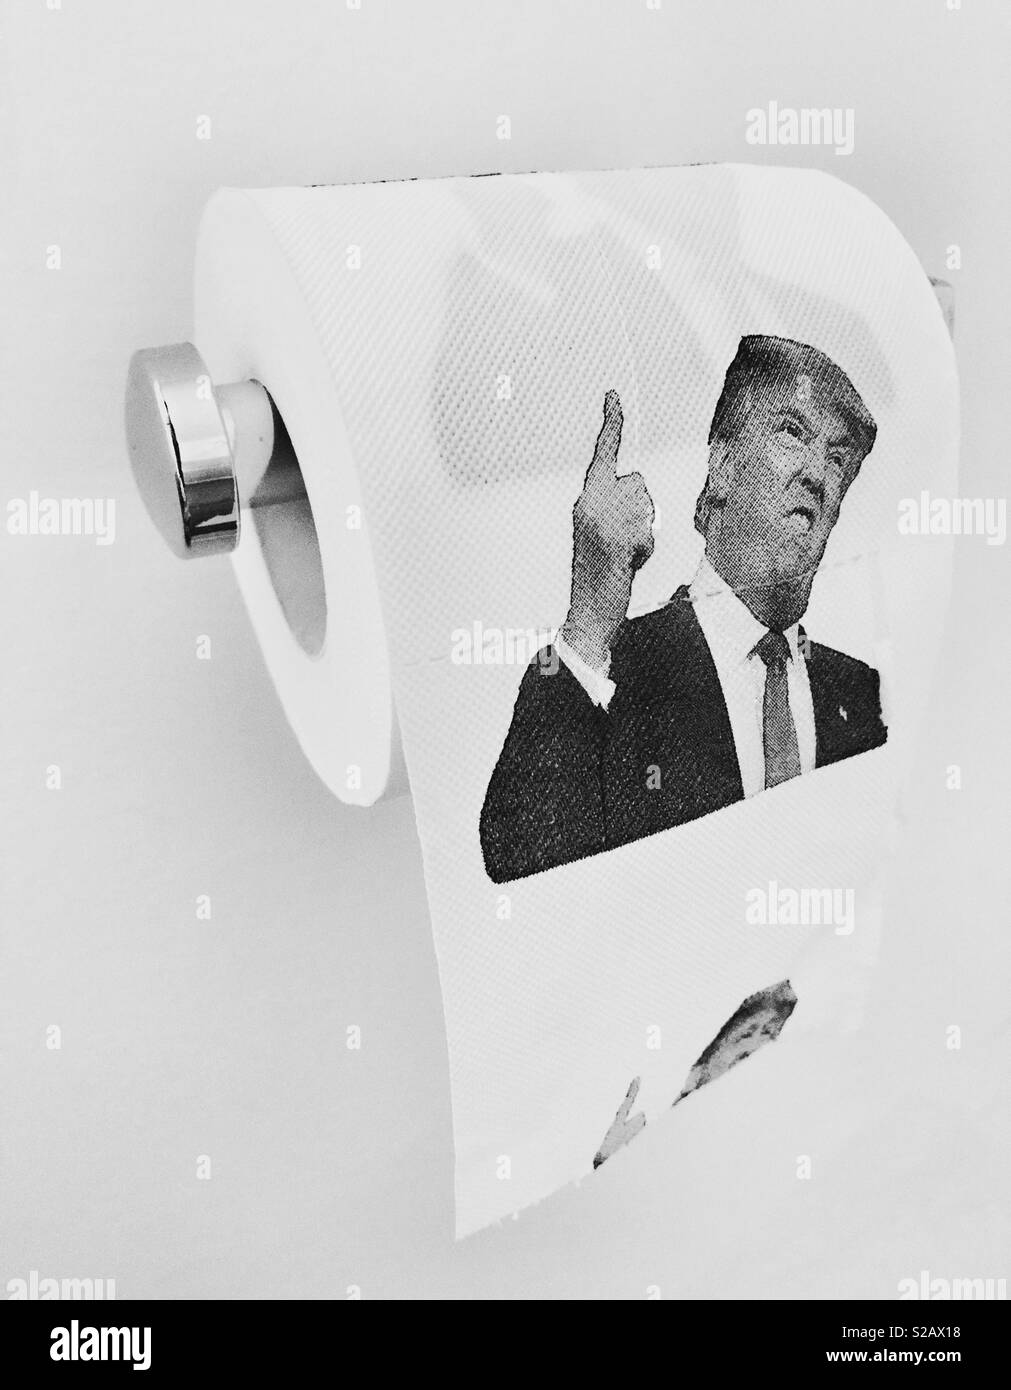 Donald Trump le papier toilette Banque D'Images